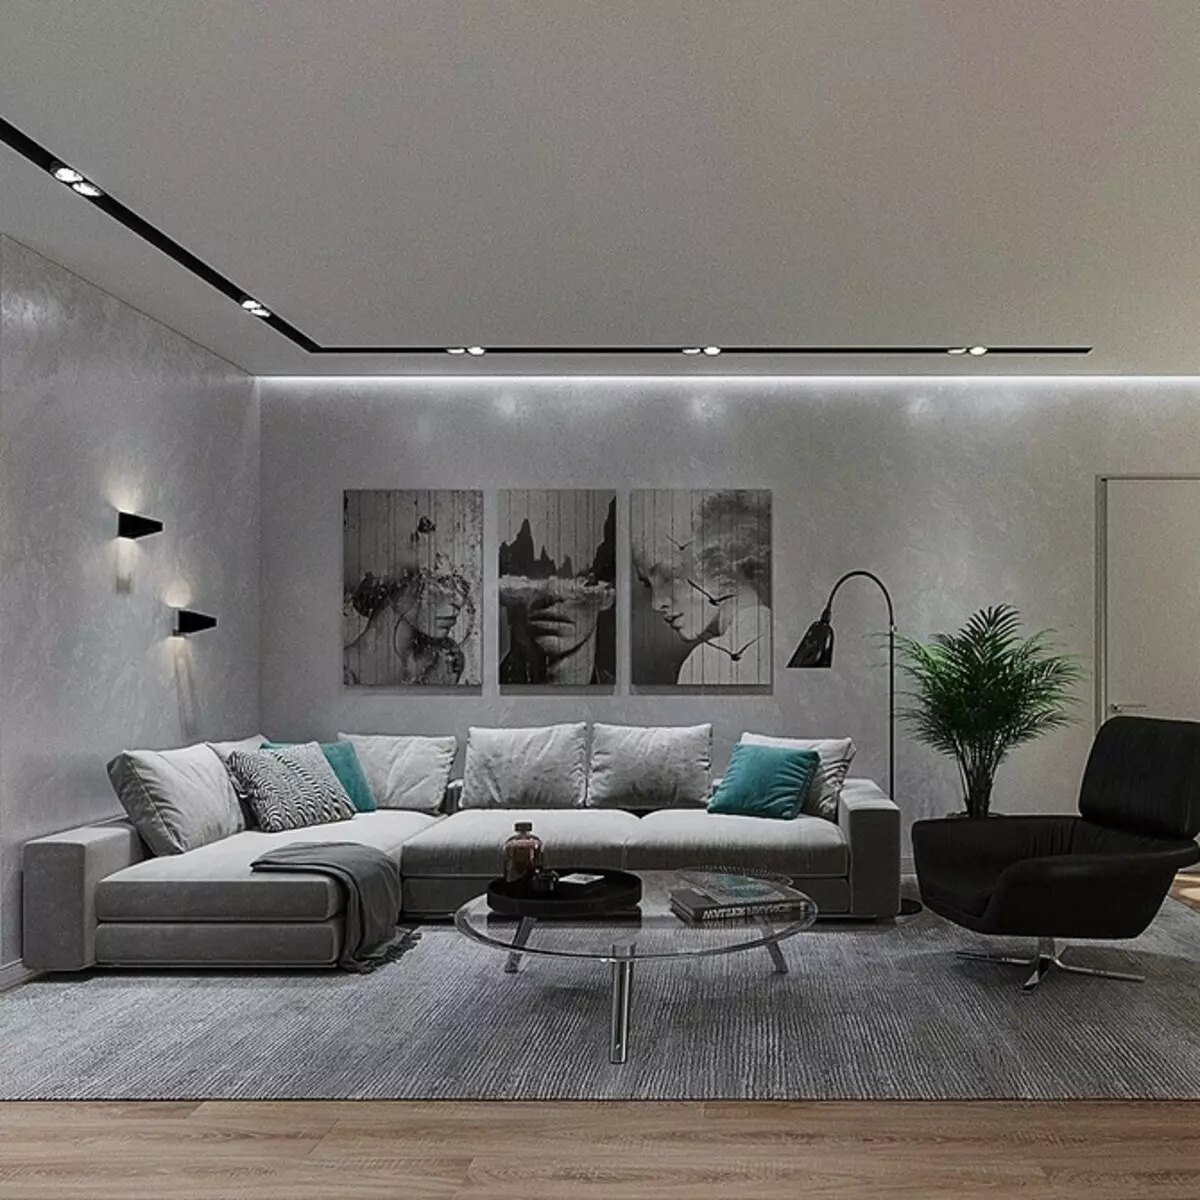 Criar um design de sala de estar minimalismo: Dicas de seleção para acabamento, móveis e decoração 8456_131